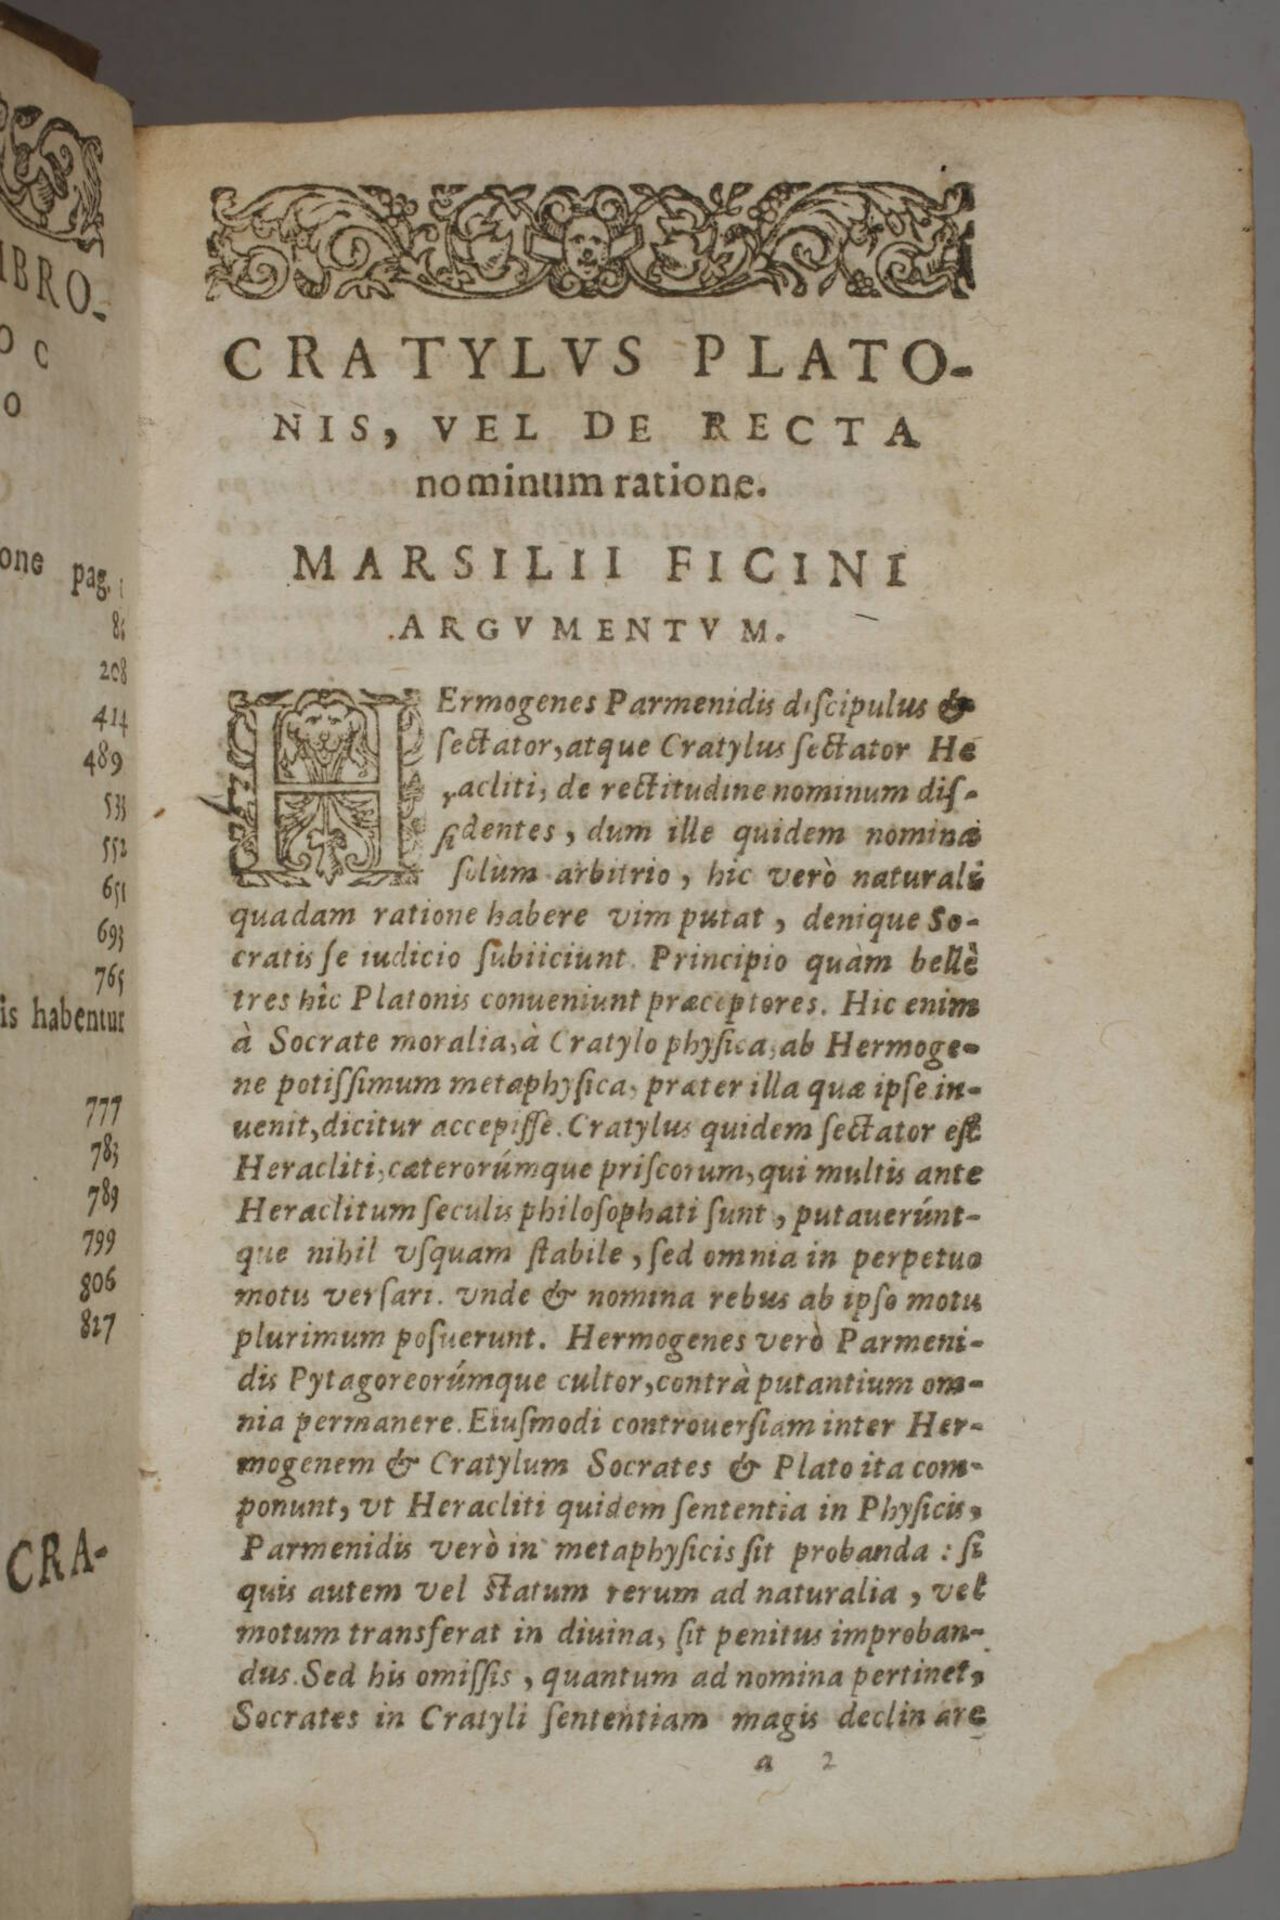 Divini Platonis Operum Omnium 1592 - Image 4 of 6